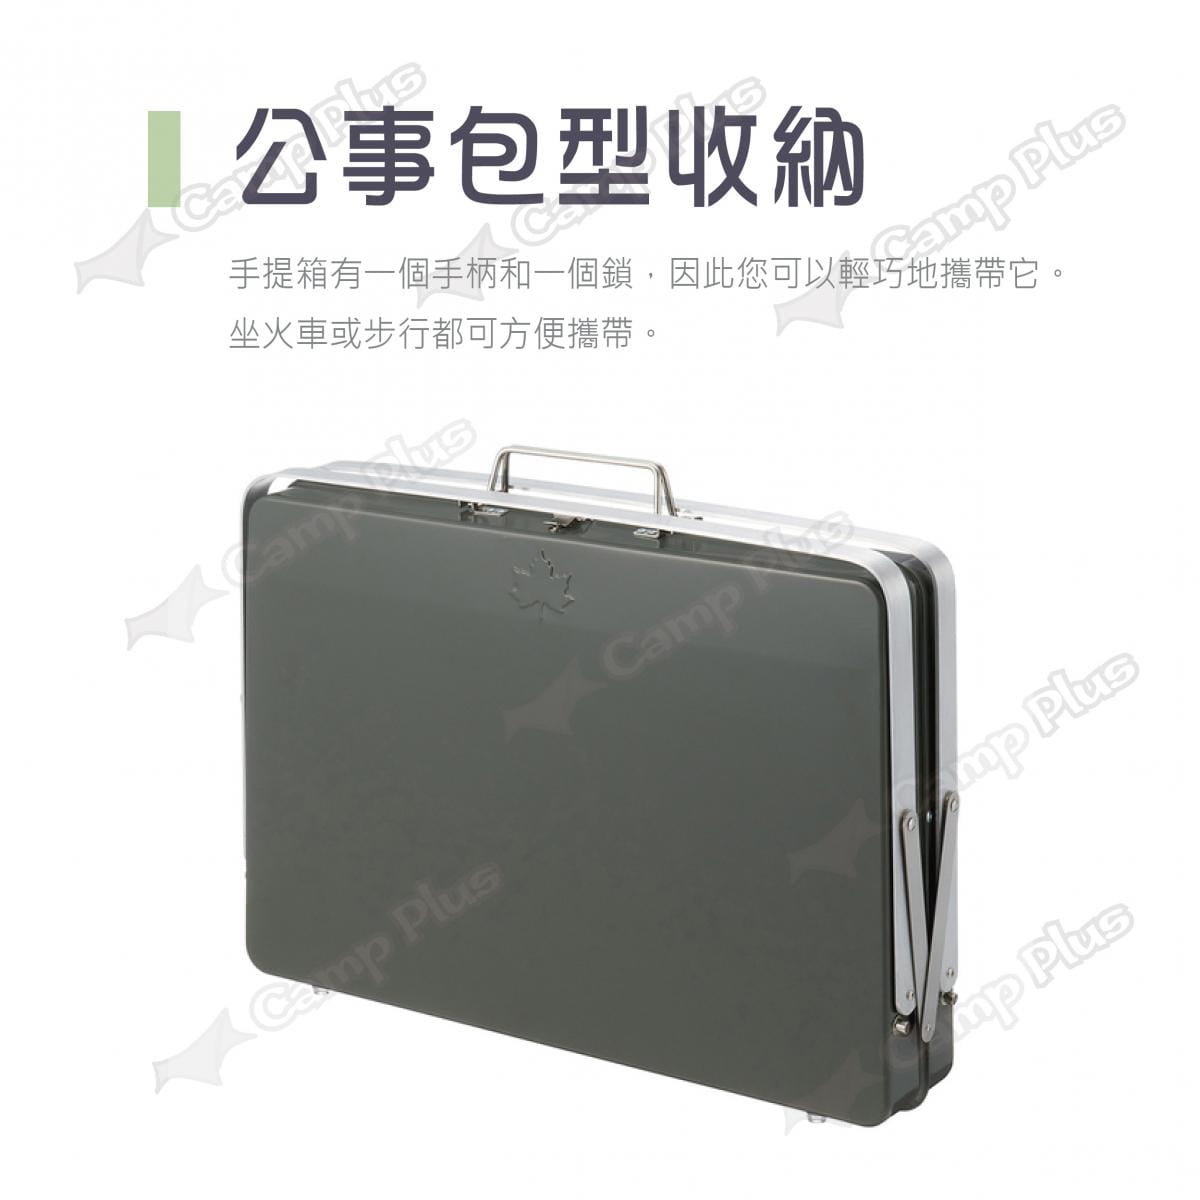 【日本LOGOS】手提箱型烤肉爐 XL_LG81060950 (悠遊戶外) 3